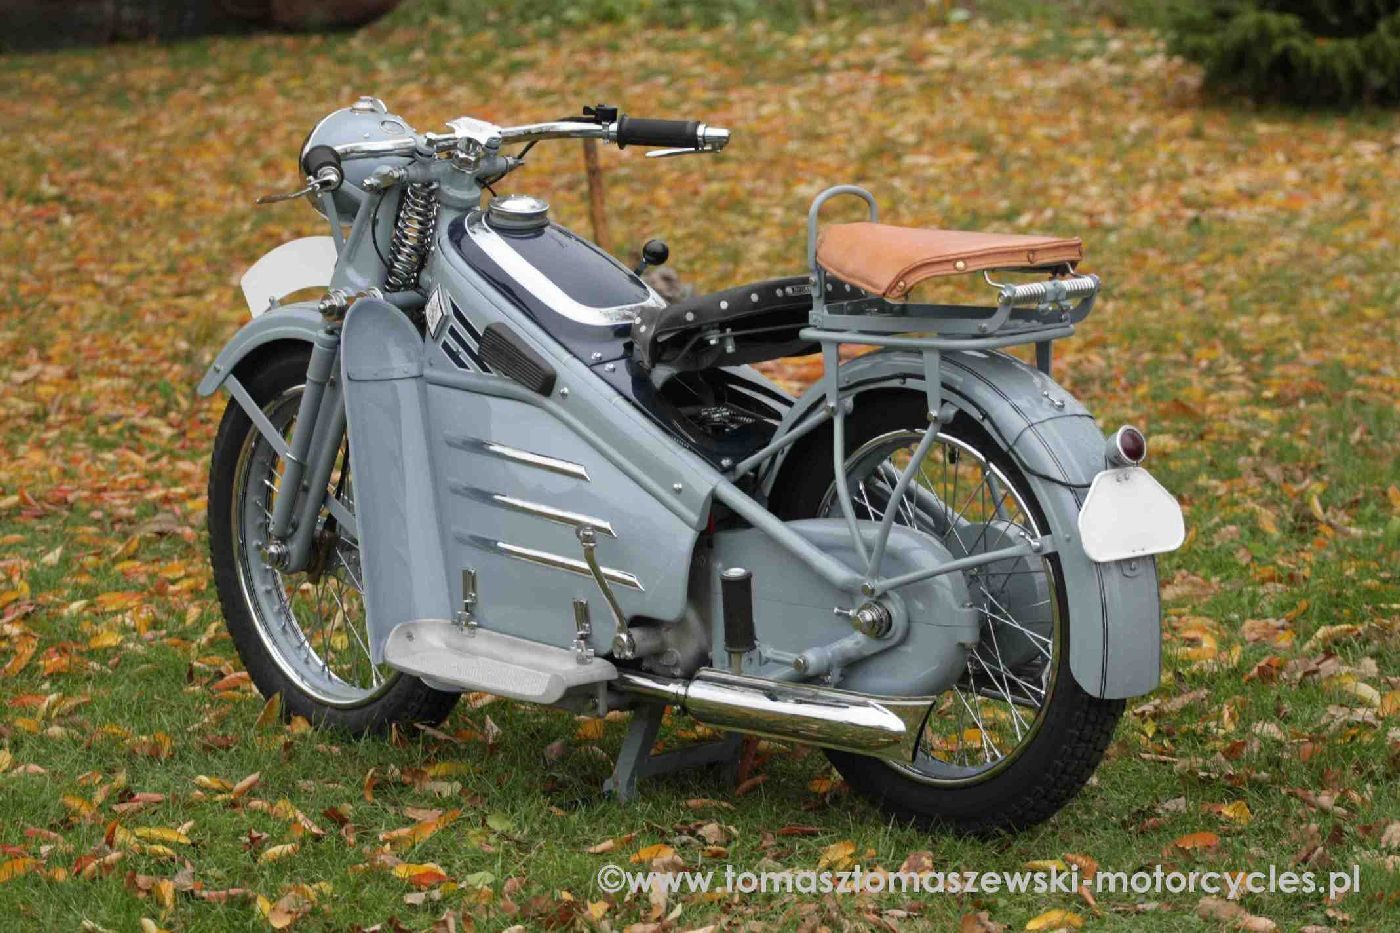 Victoria oznaczała swoje motocykle symbolem KR (czyli Kraftrad - z niemieckiego: motocykl).